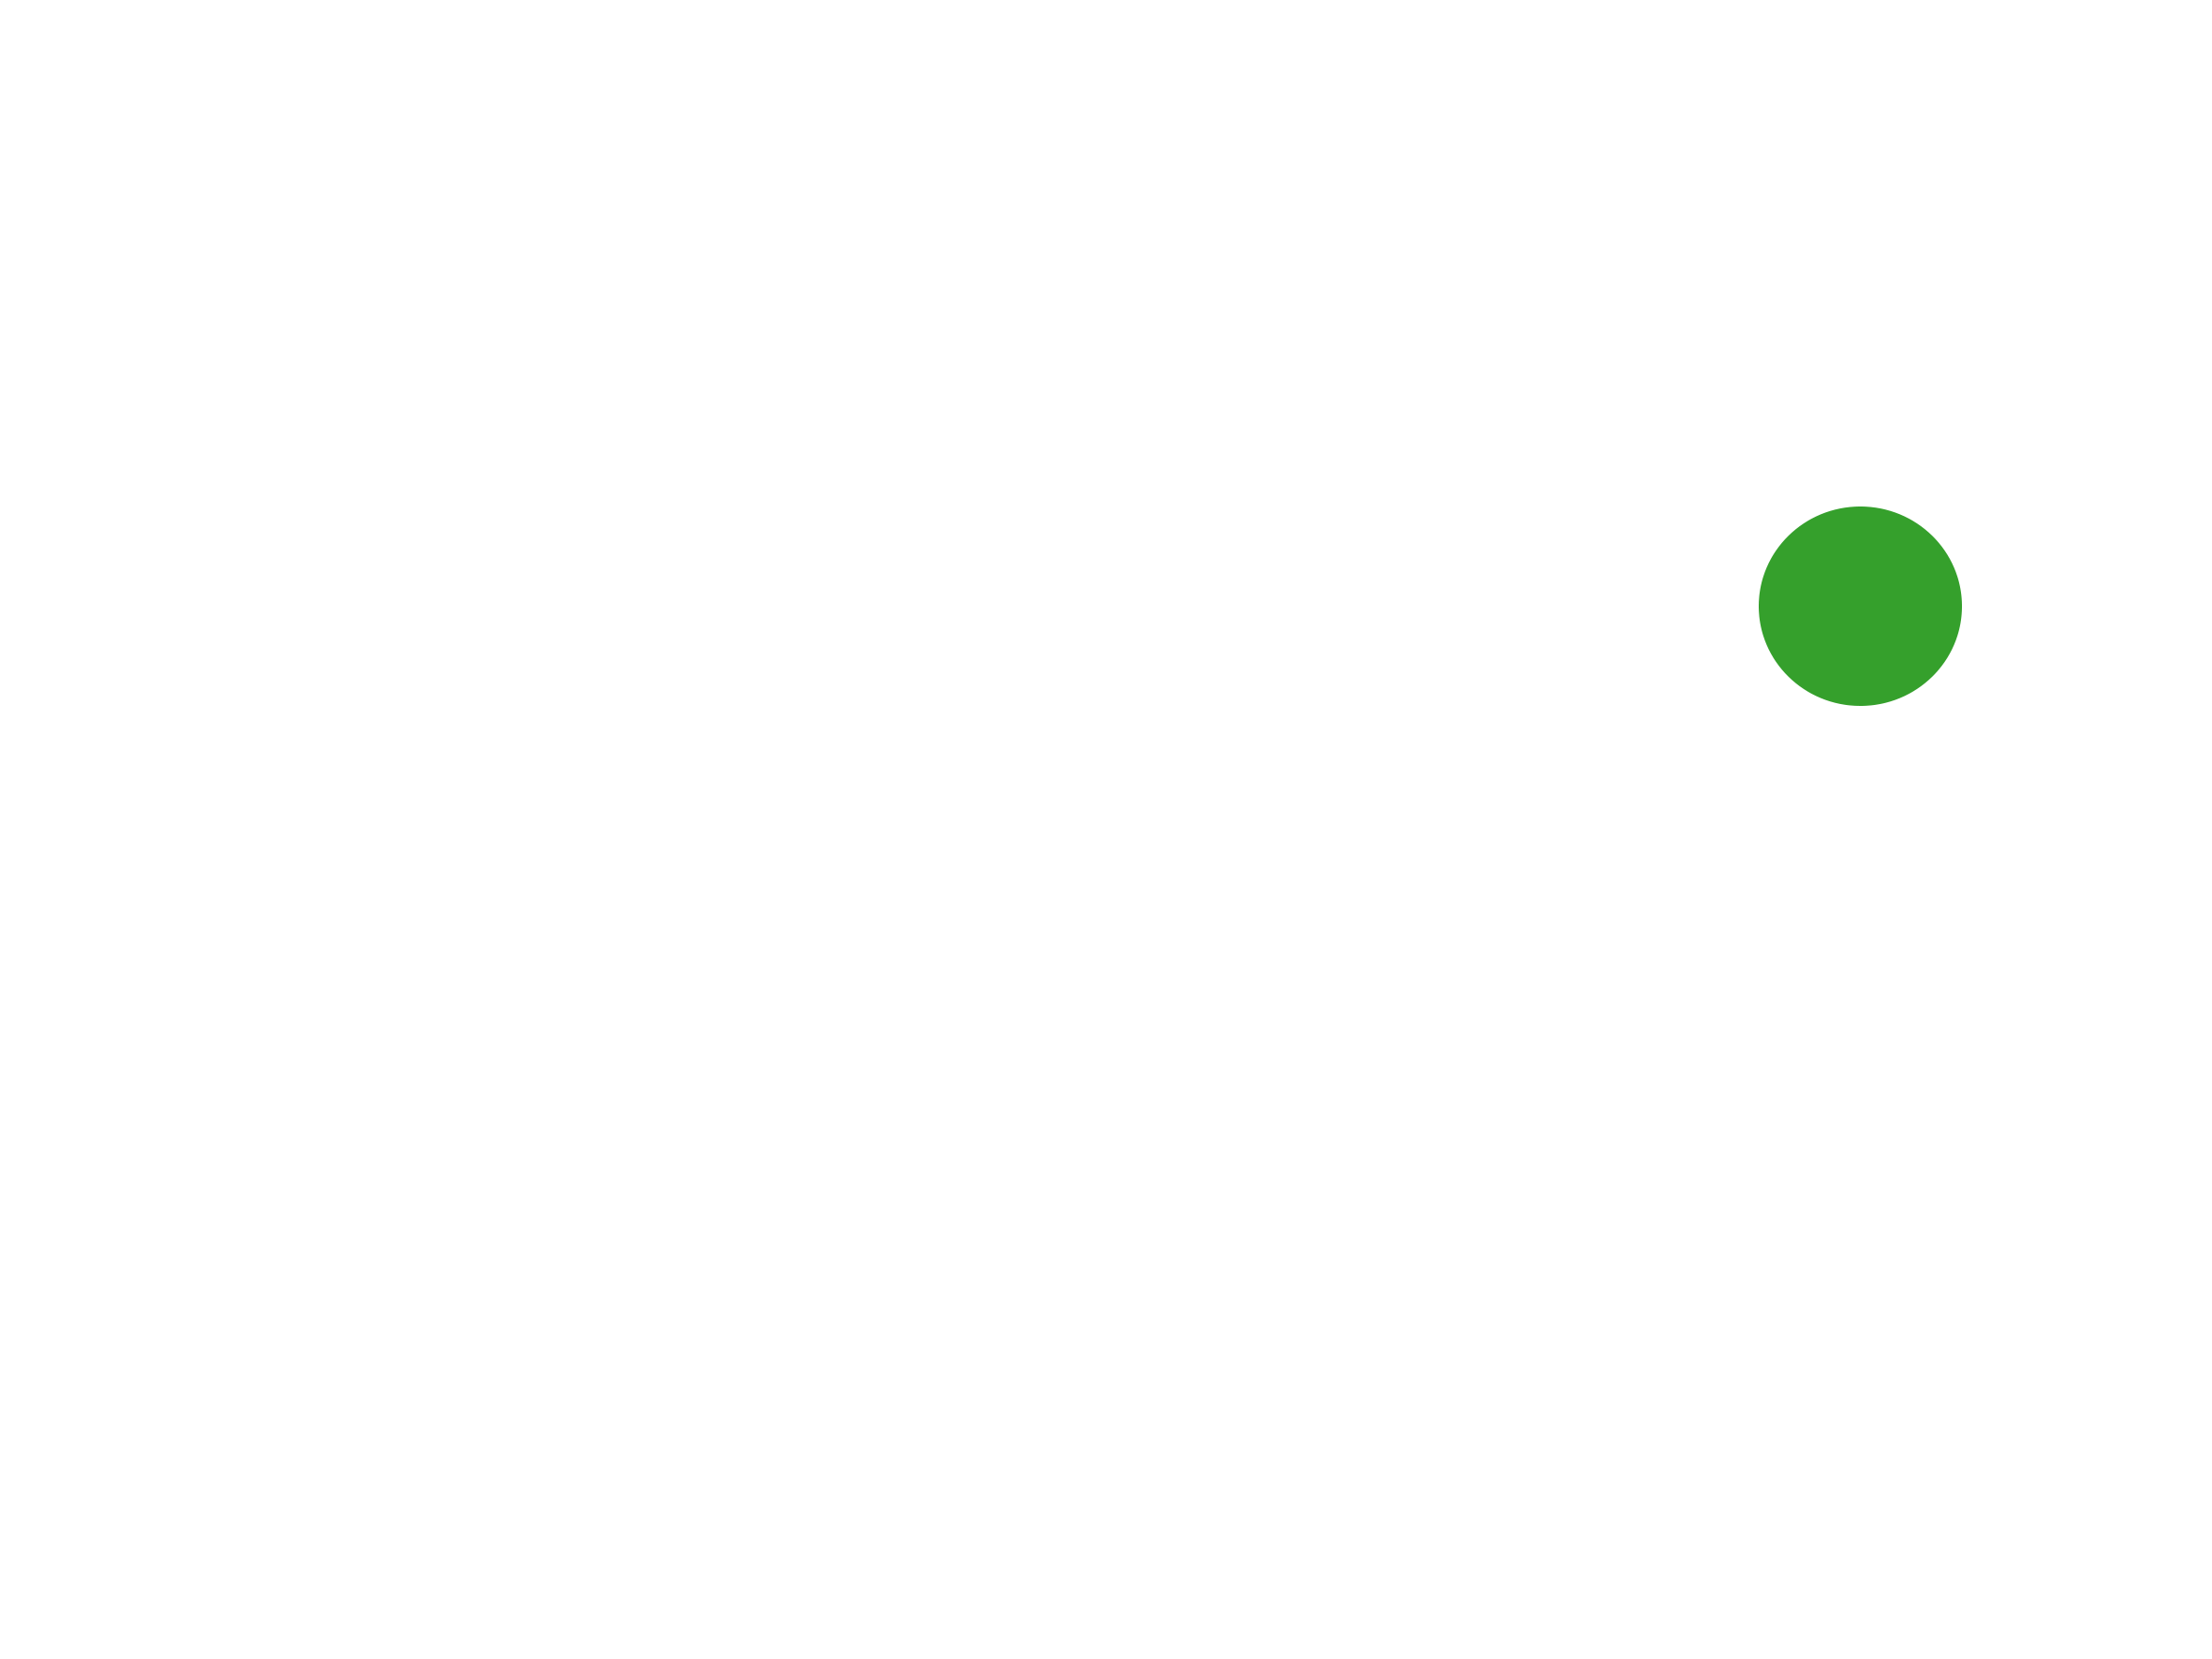 NeoRobotics